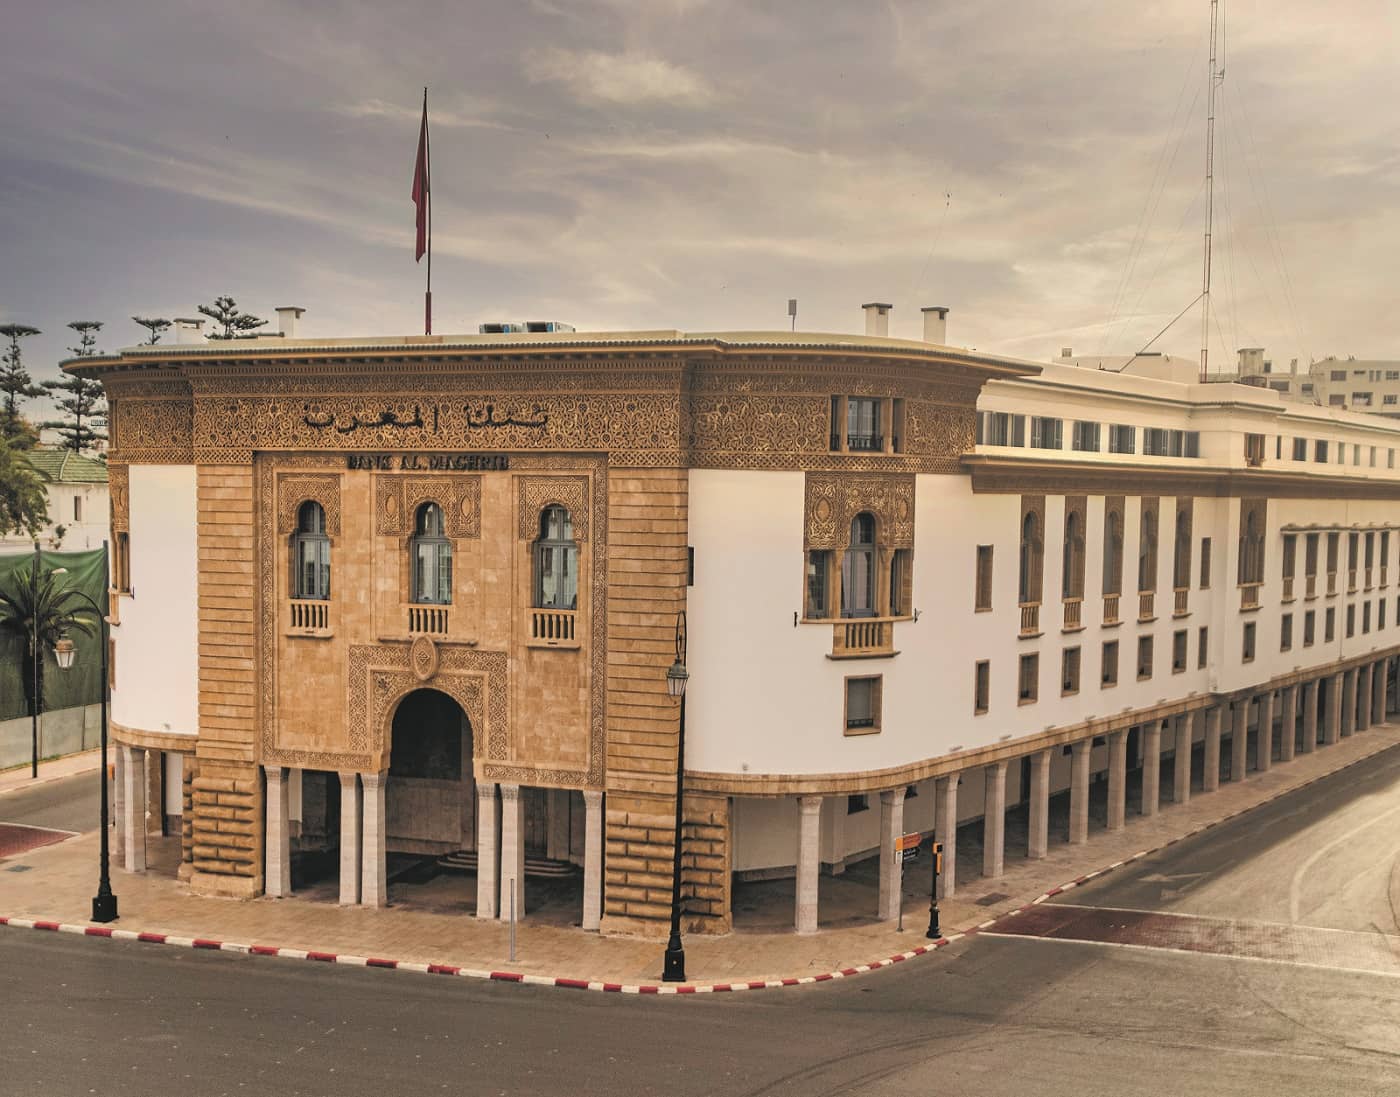 Bank Al-Maghrib maintient inchangé son taux directeur à 1,5%